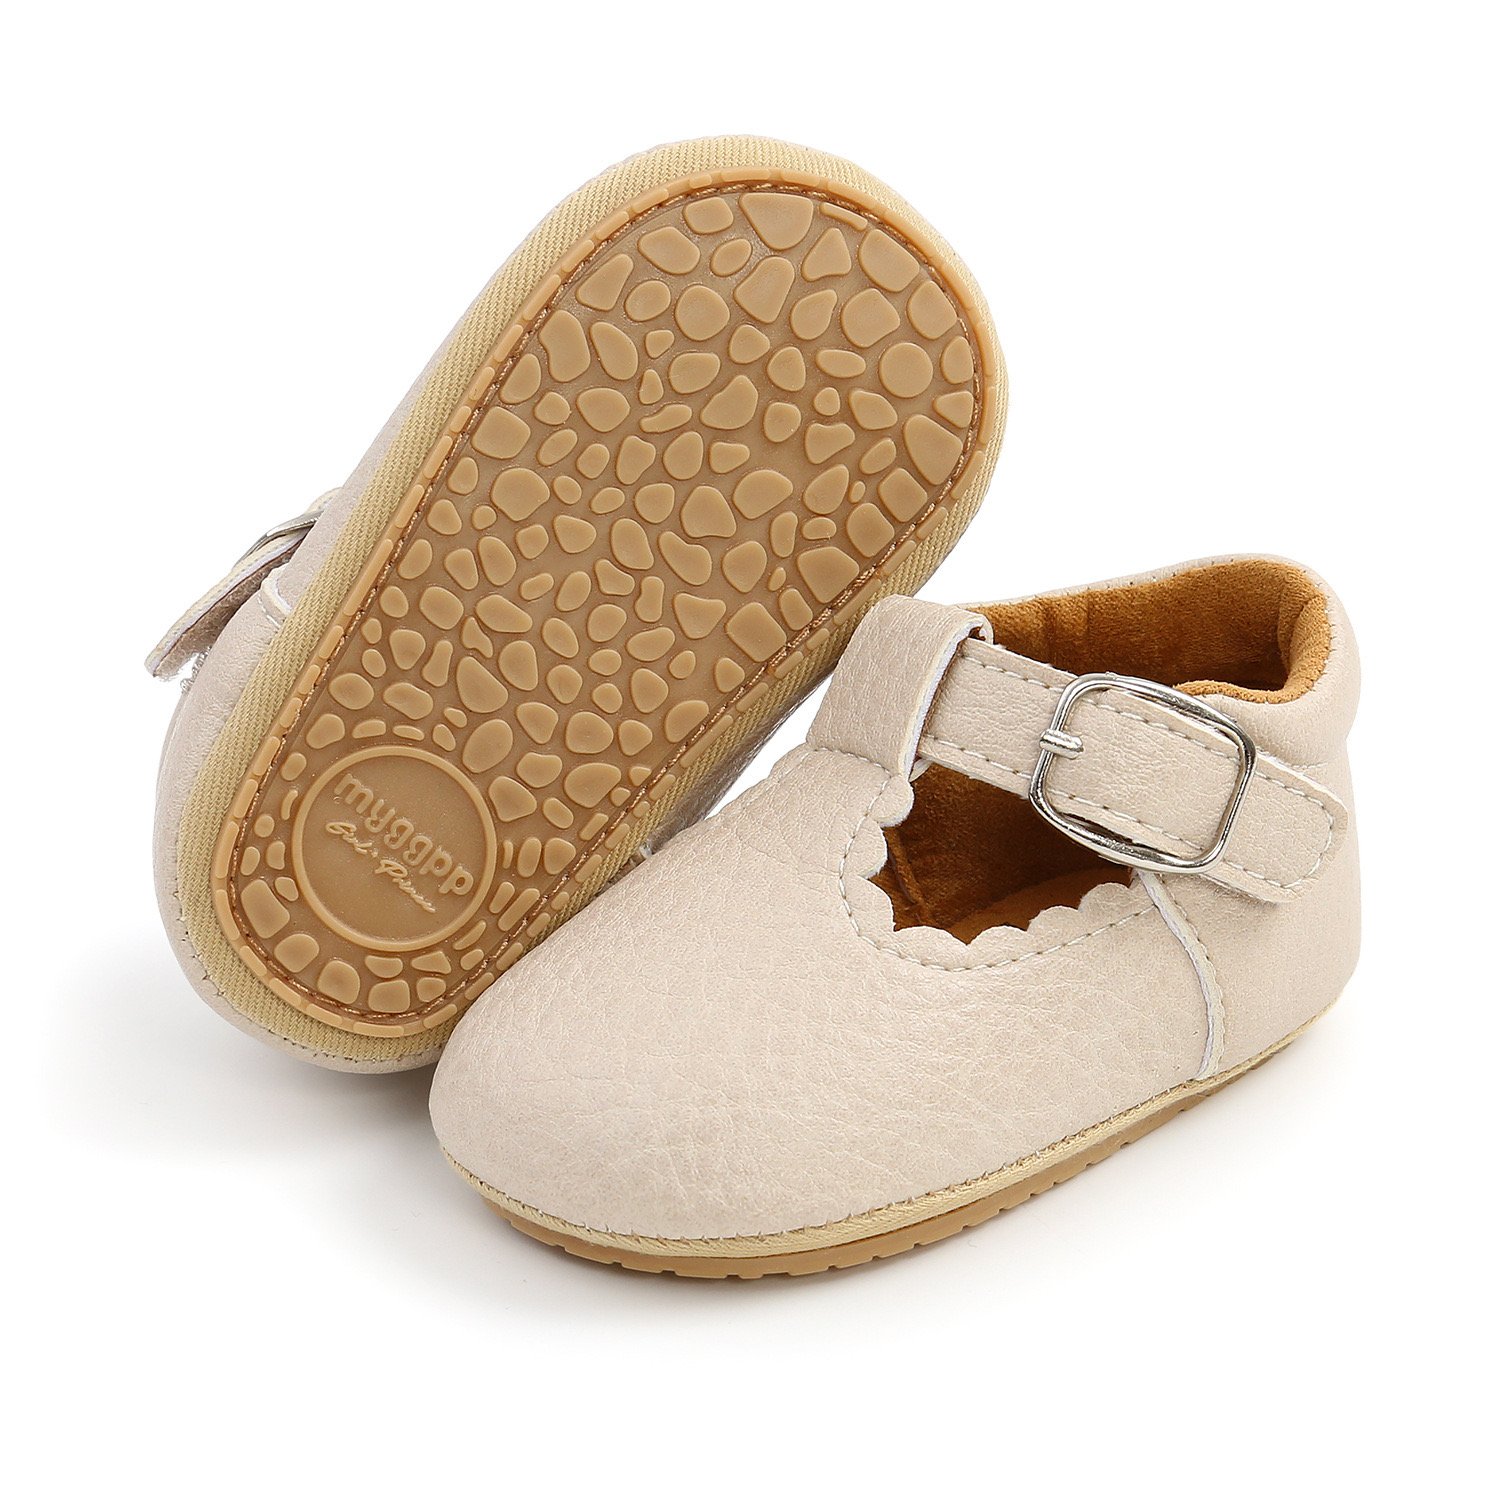 Cream Leena baby classic leather shoe for babies - Leenababies